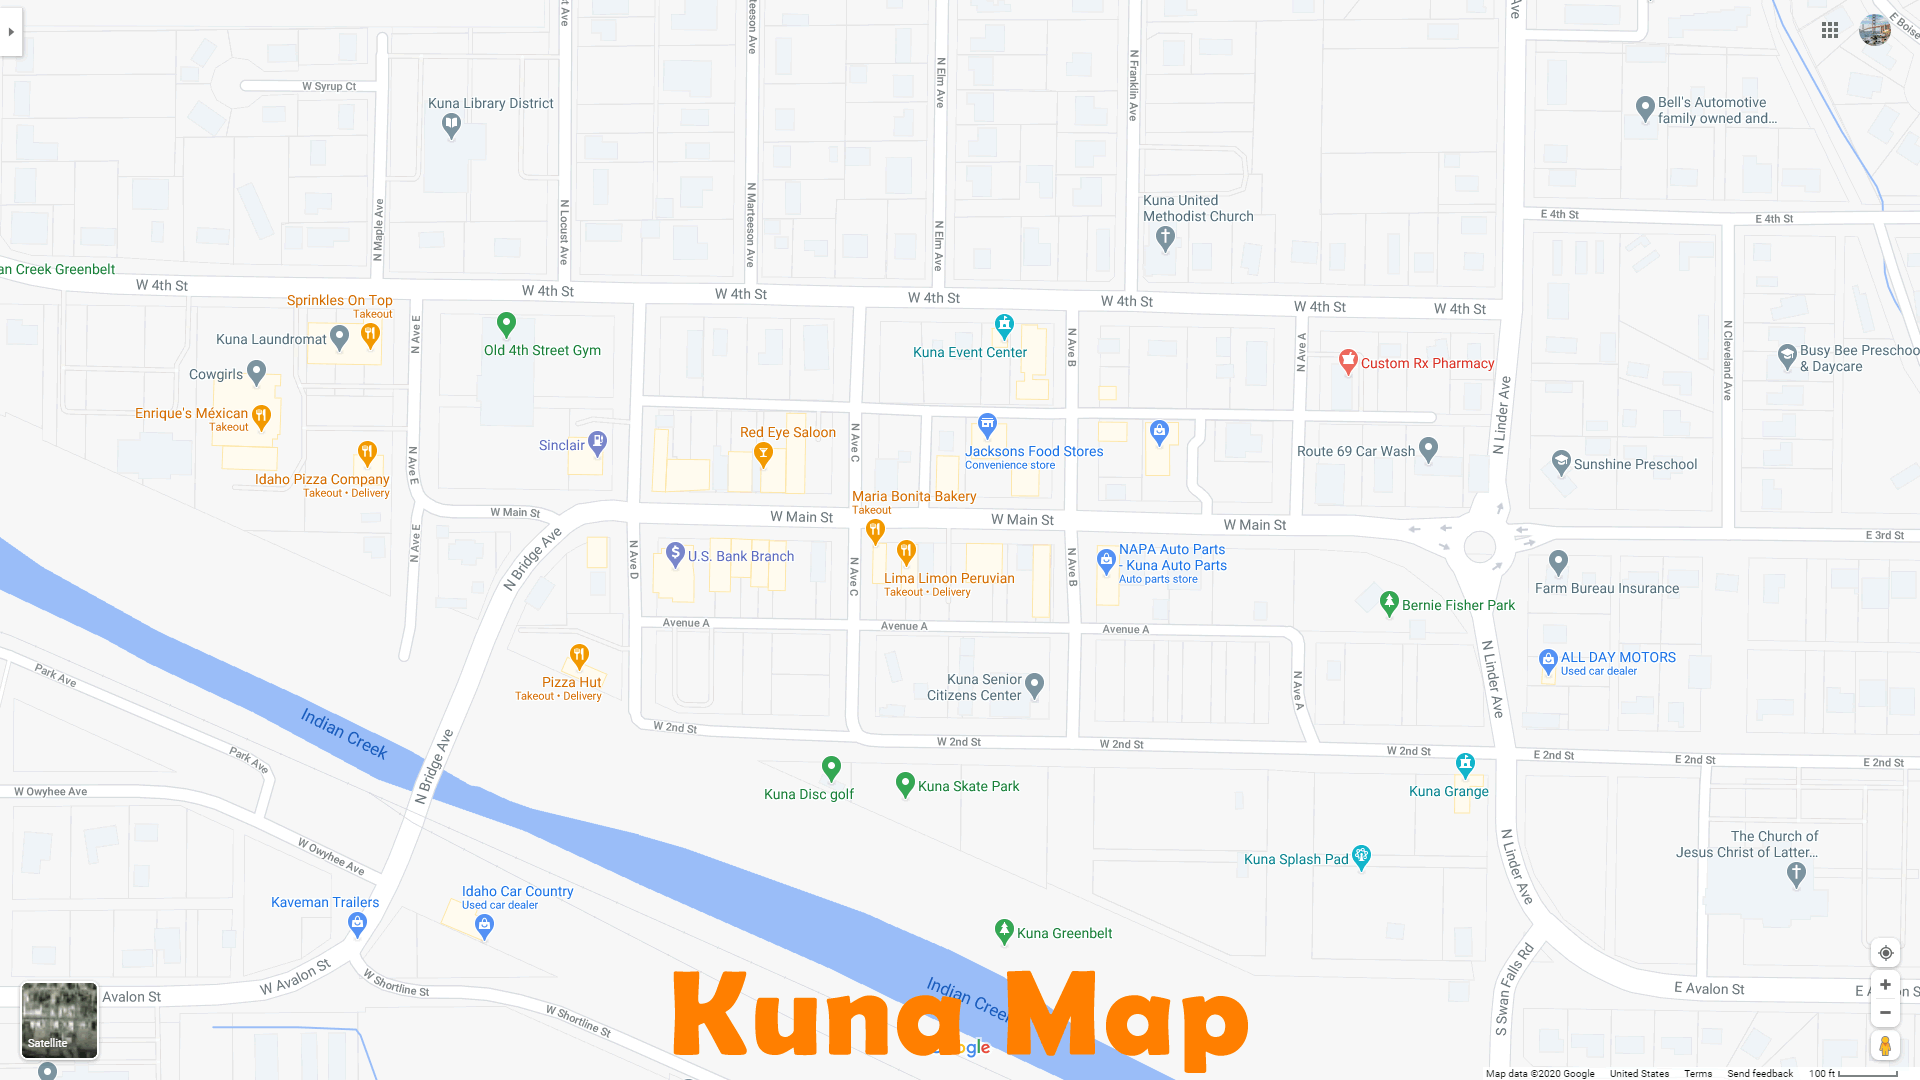 Kuna idaho Map